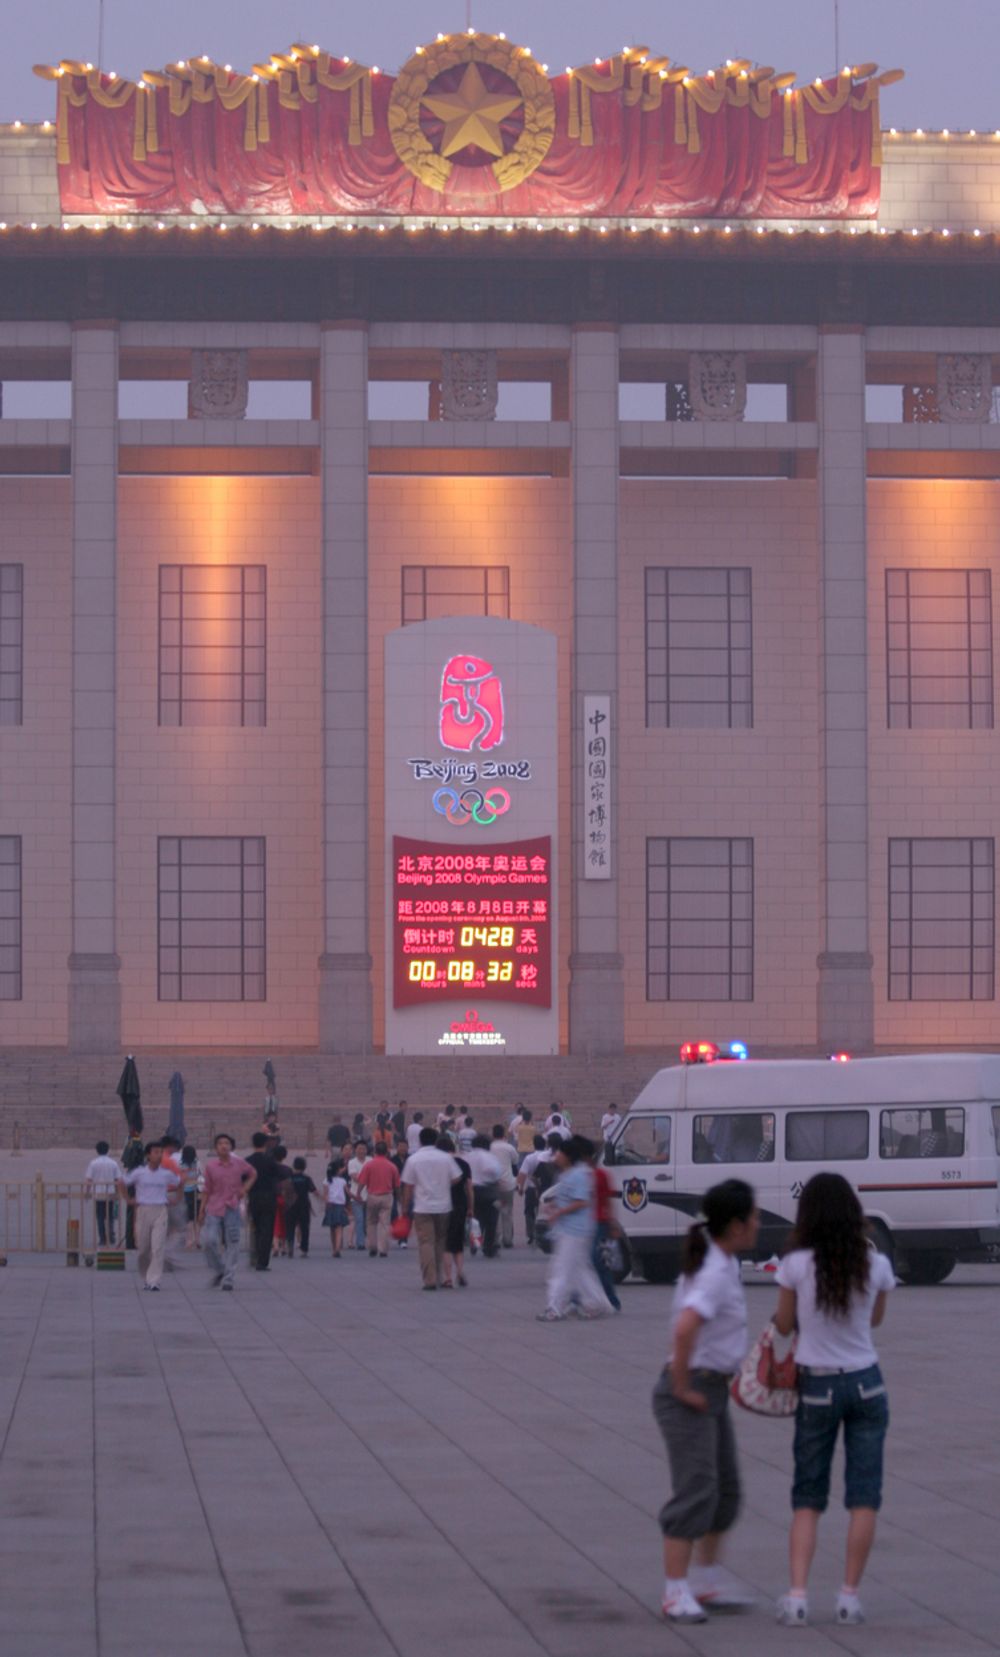 NEDTELLINGEN I GANG: På den himmelske freds plass i Beijing er det en stor digital klokke som forteller hvor lang tid det er igjen før OL åpner.